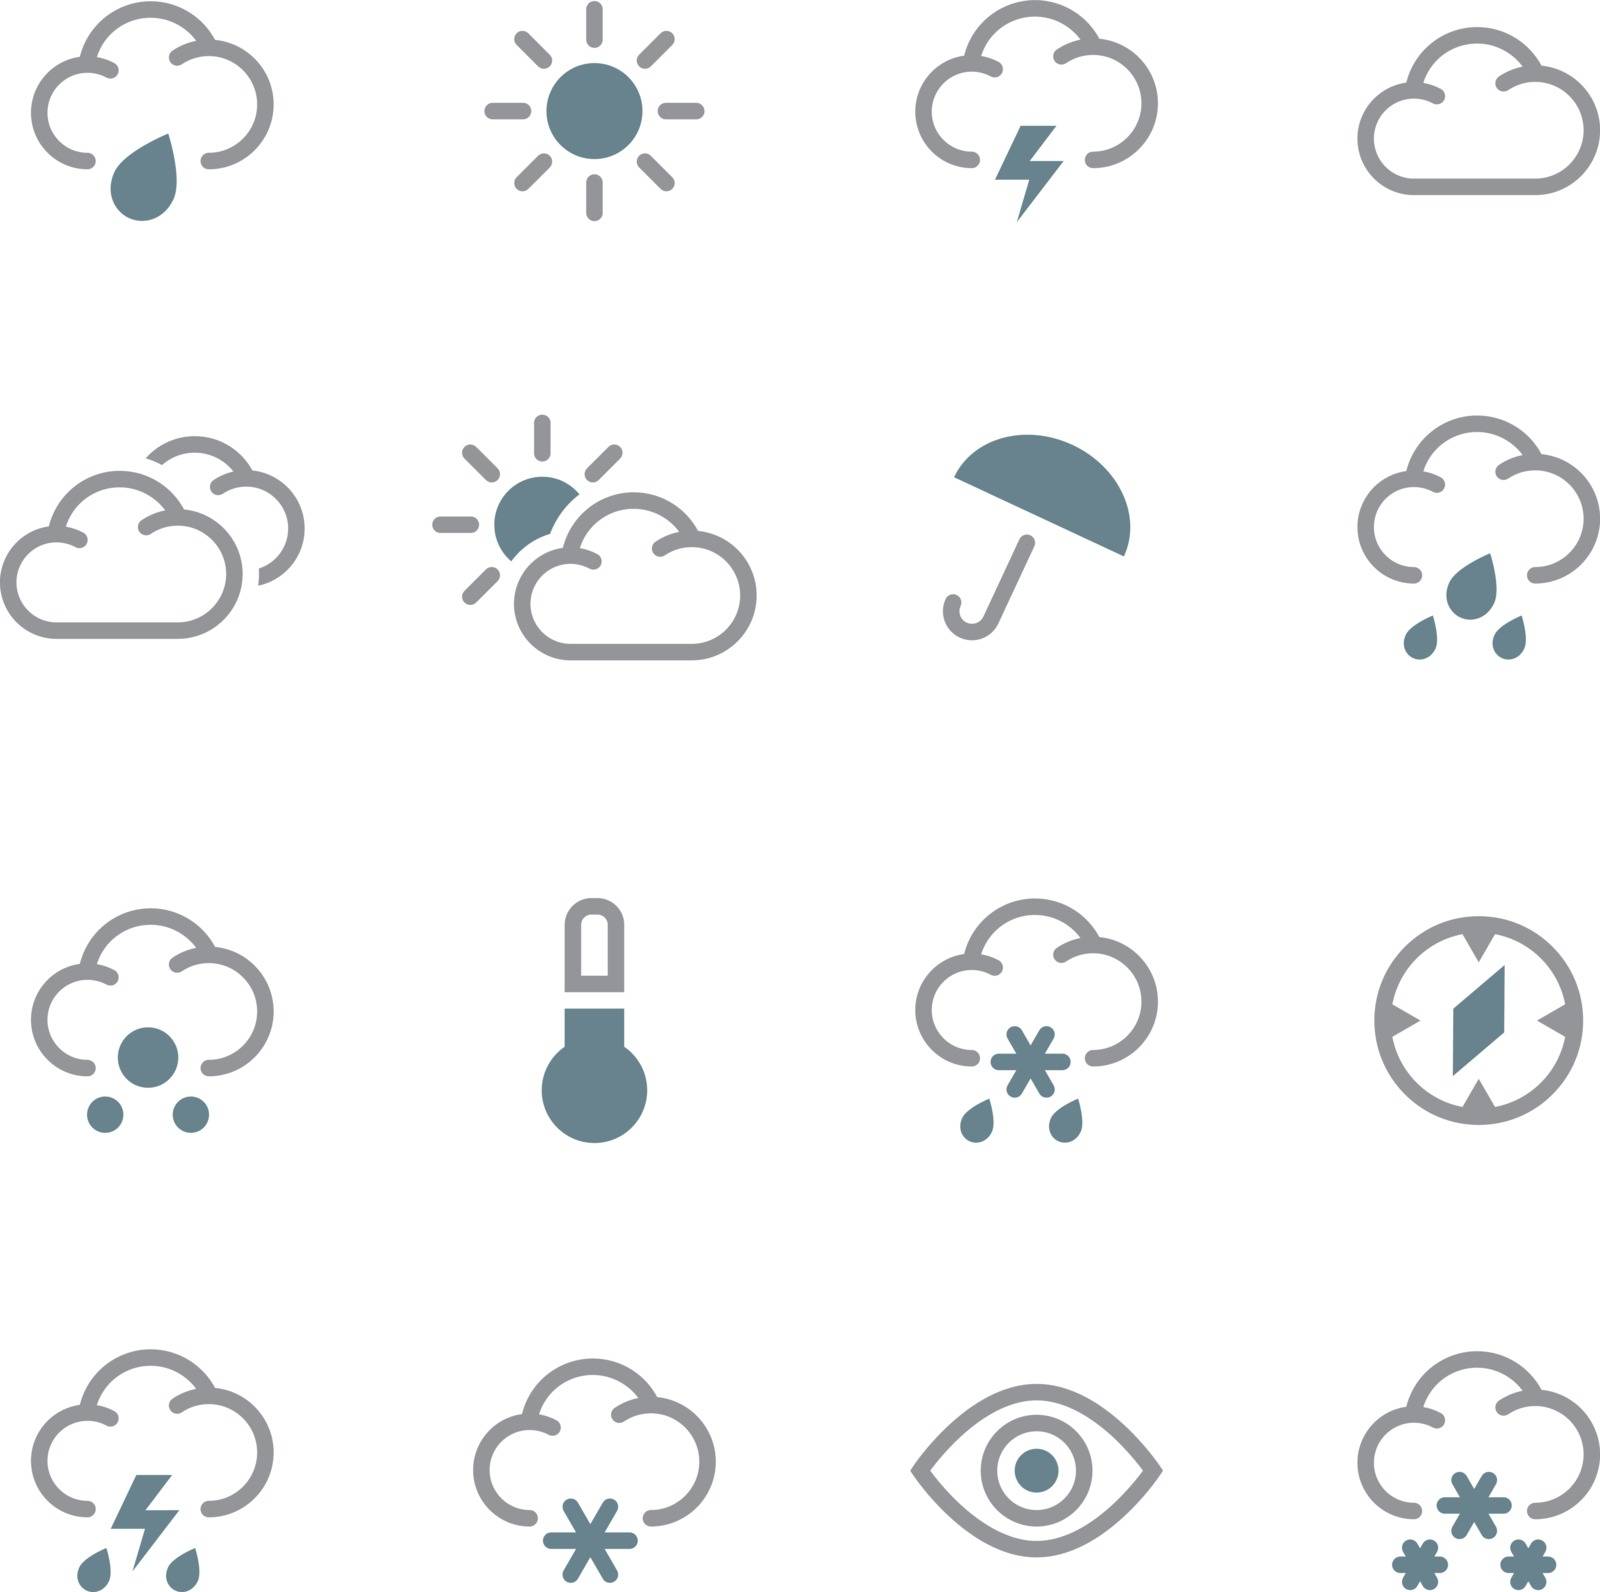 Weather forecast icons set. 